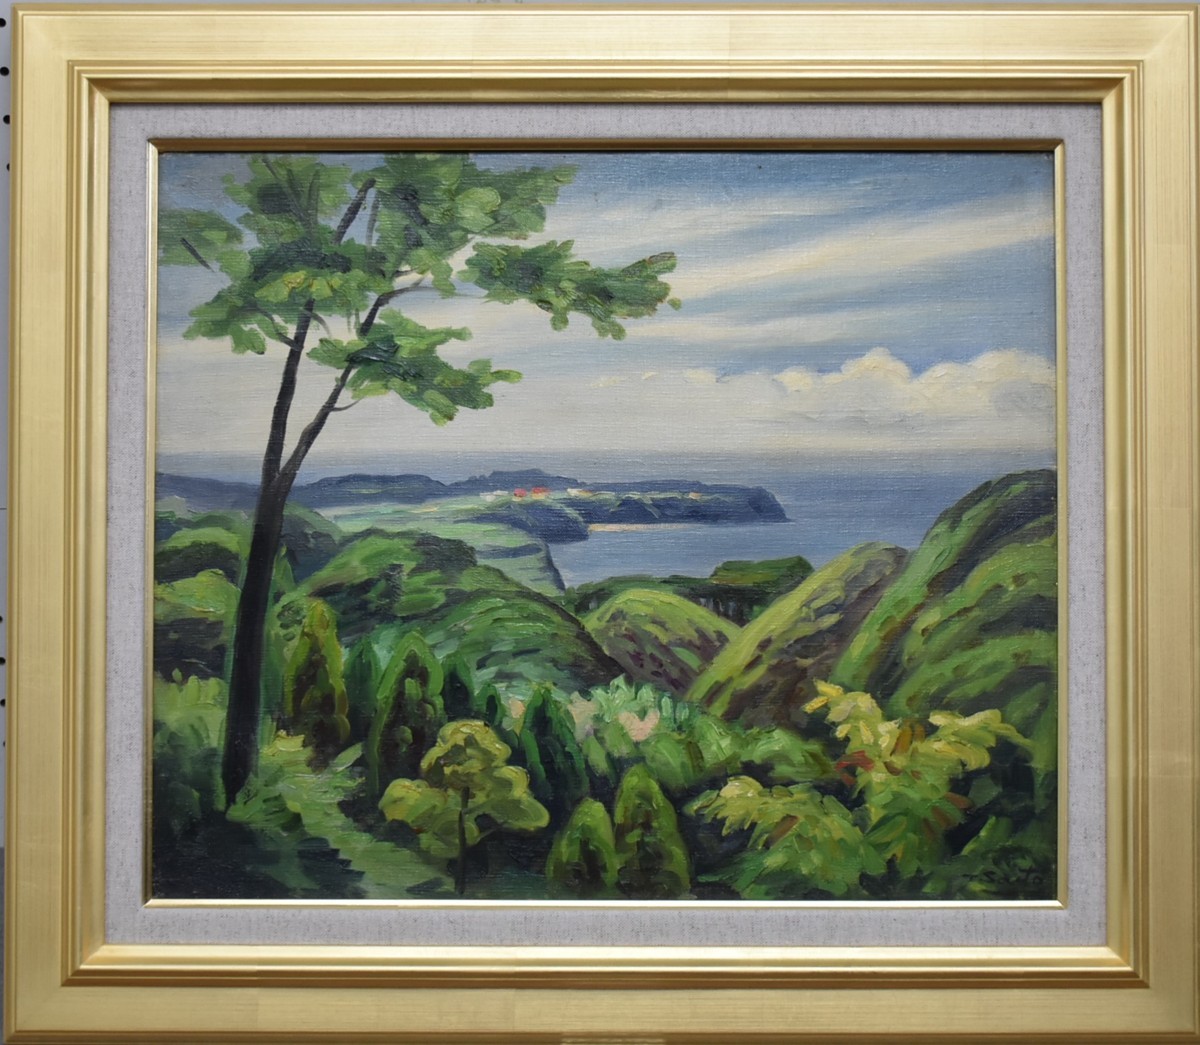 ¡Pinturas al óleo populares recomendadas! Toyonosuke Saito No. 8 Península de Miura Galería Masamitsu, cuadro, pintura al óleo, Naturaleza, Pintura de paisaje